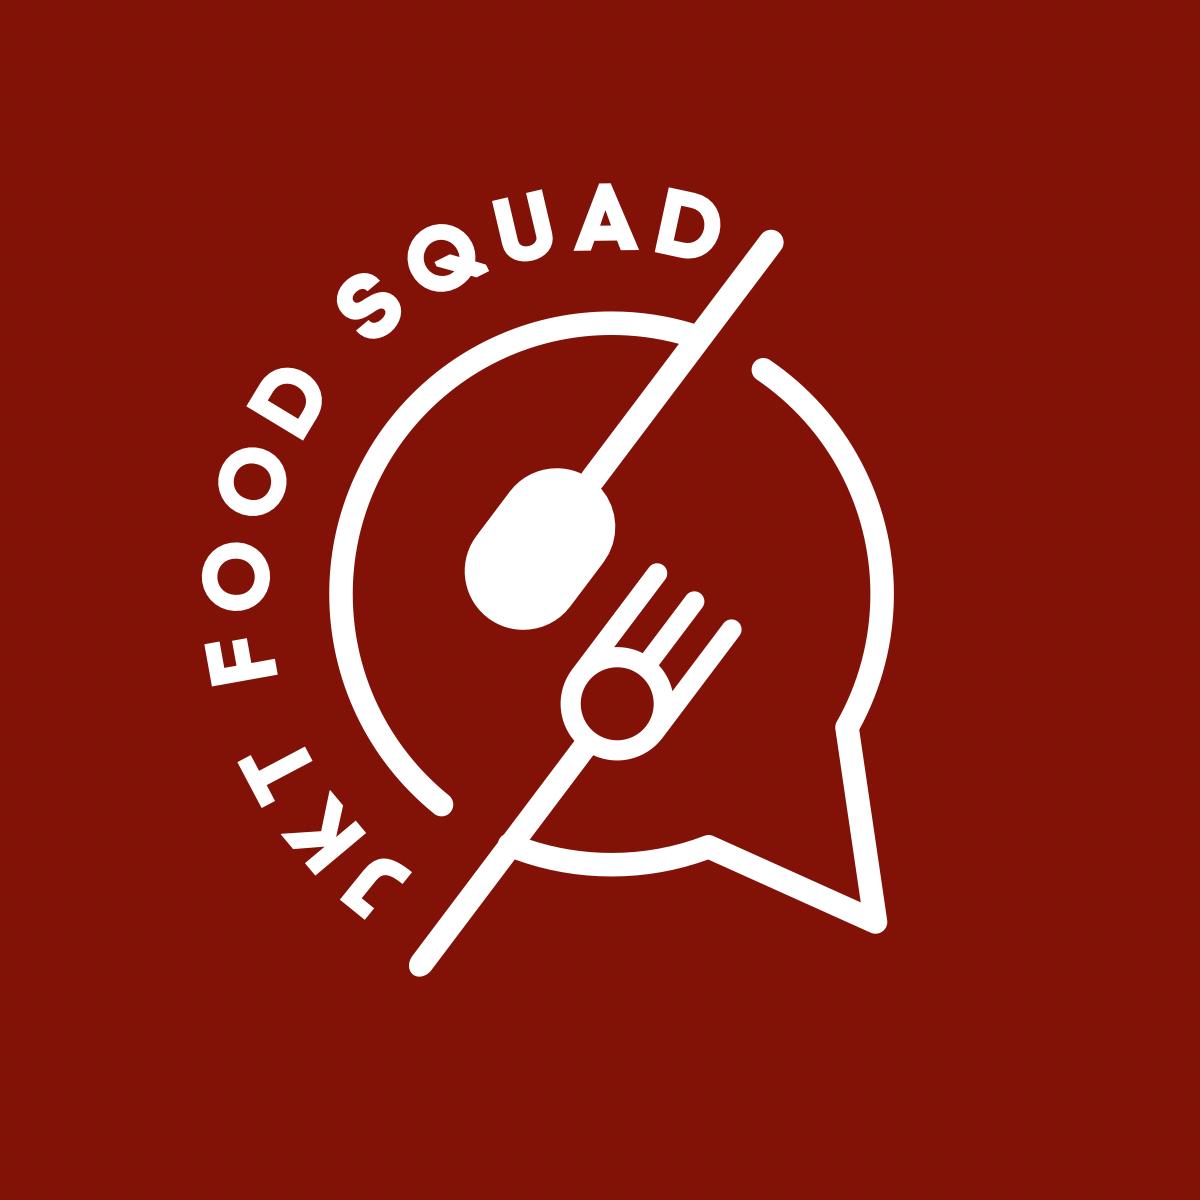 Gambar JKT Food Squad